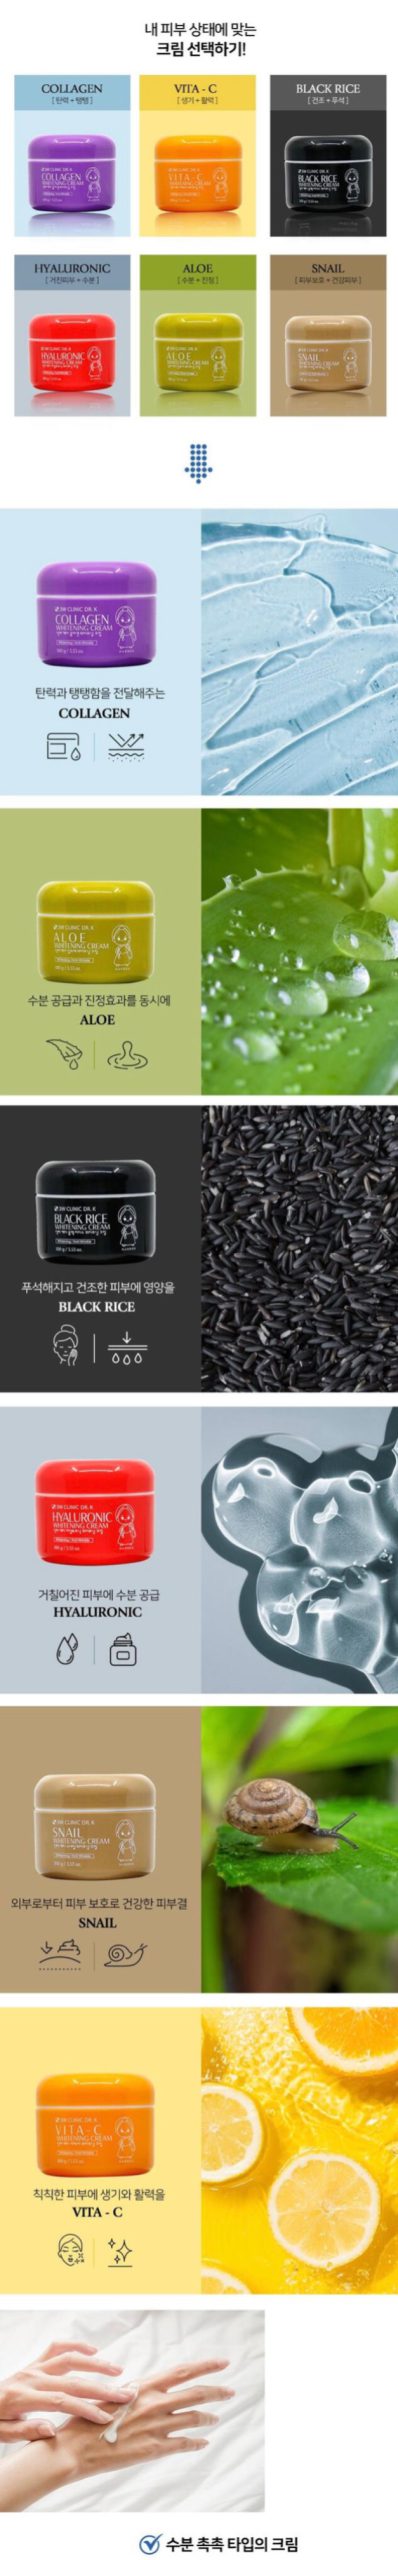 مجموعه کرم های روشن کننده ، سفید کننده ، ترمیم کننده و جوانساز کره ای DR.K از برند 3W CLINIC